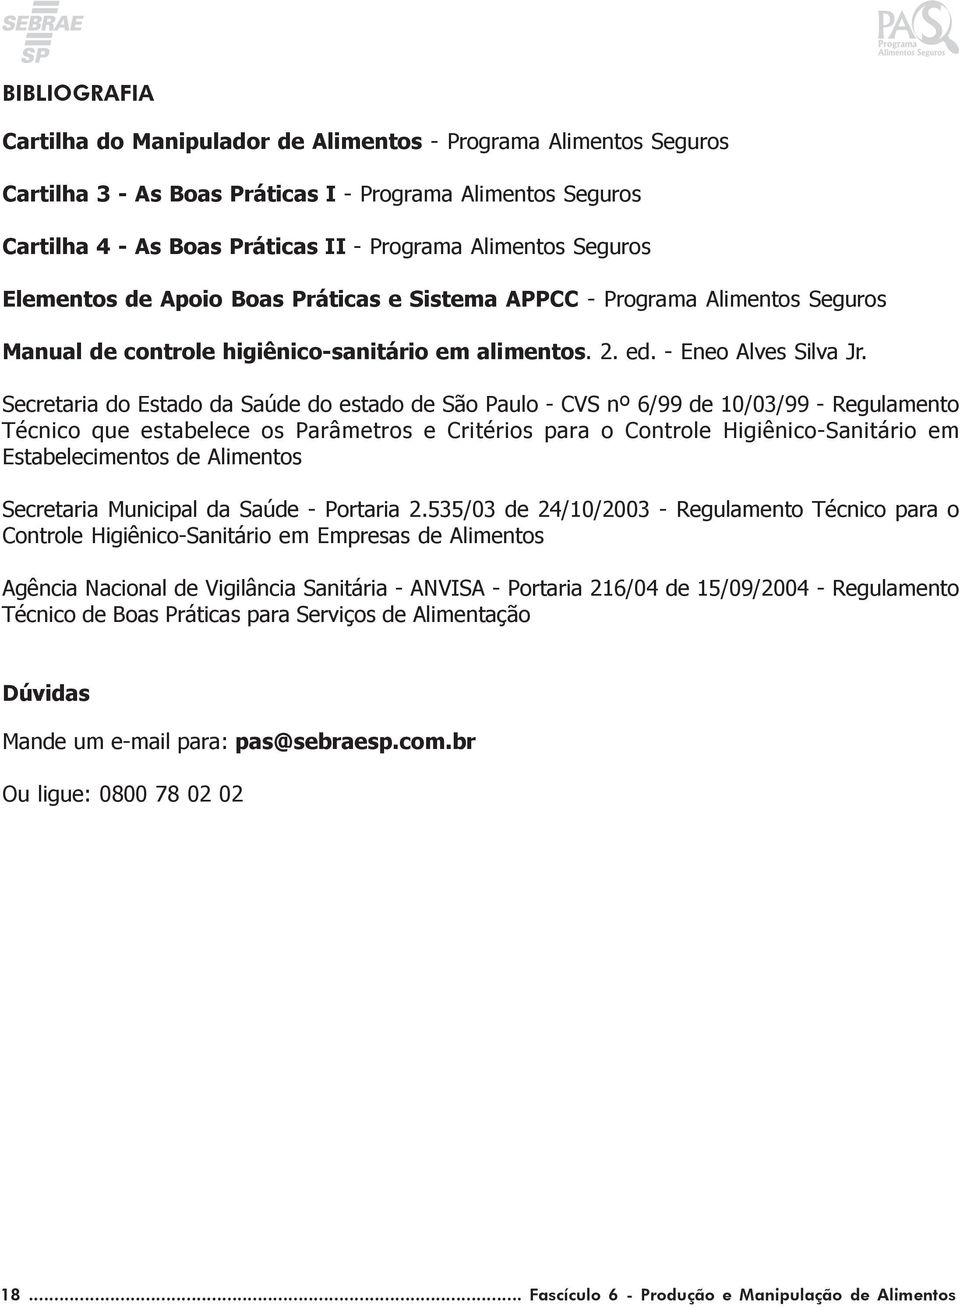 Secretaria do Estado da Saúde do estado de São Paulo - CVS nº 6/99 de 10/03/99 - Regulamento Técnico que estabelece os Parâmetros e Critérios para o Controle Higiênico-Sanitário em Estabelecimentos